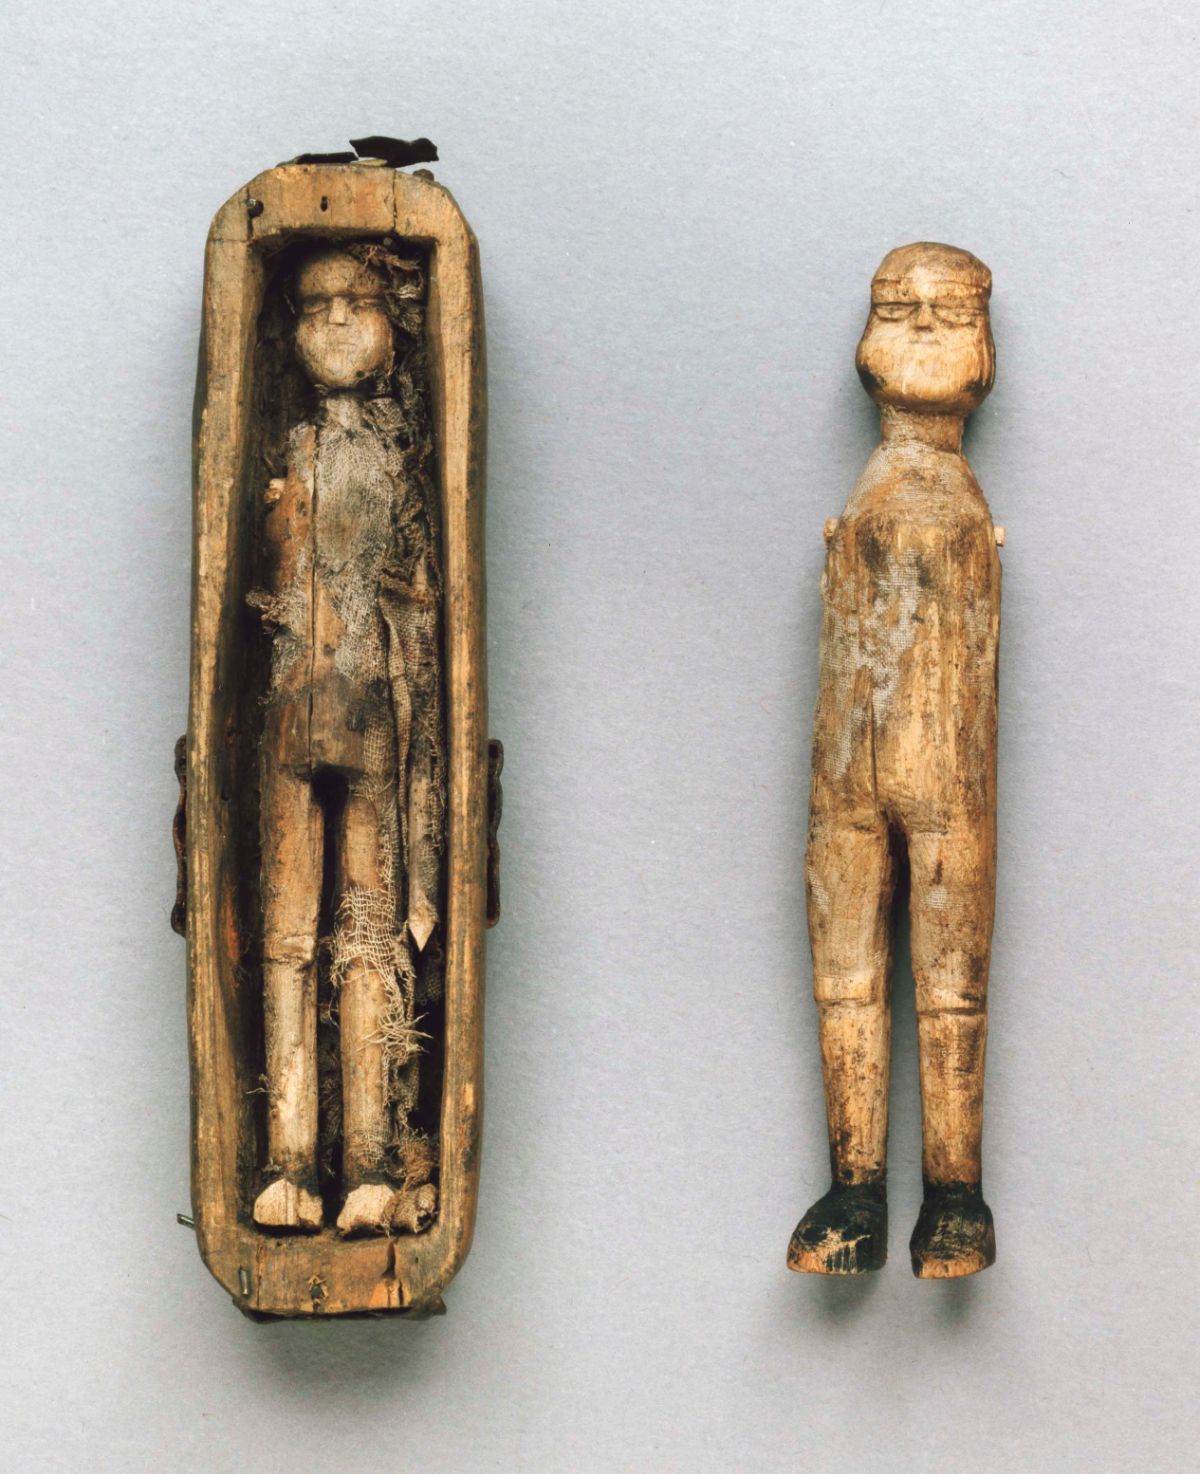 Деревянная кукла одна из первых игрушек впр. Деревянная кукла. Древние игрушки. Старые деревянные куклы. Старинные деревянные куколки.